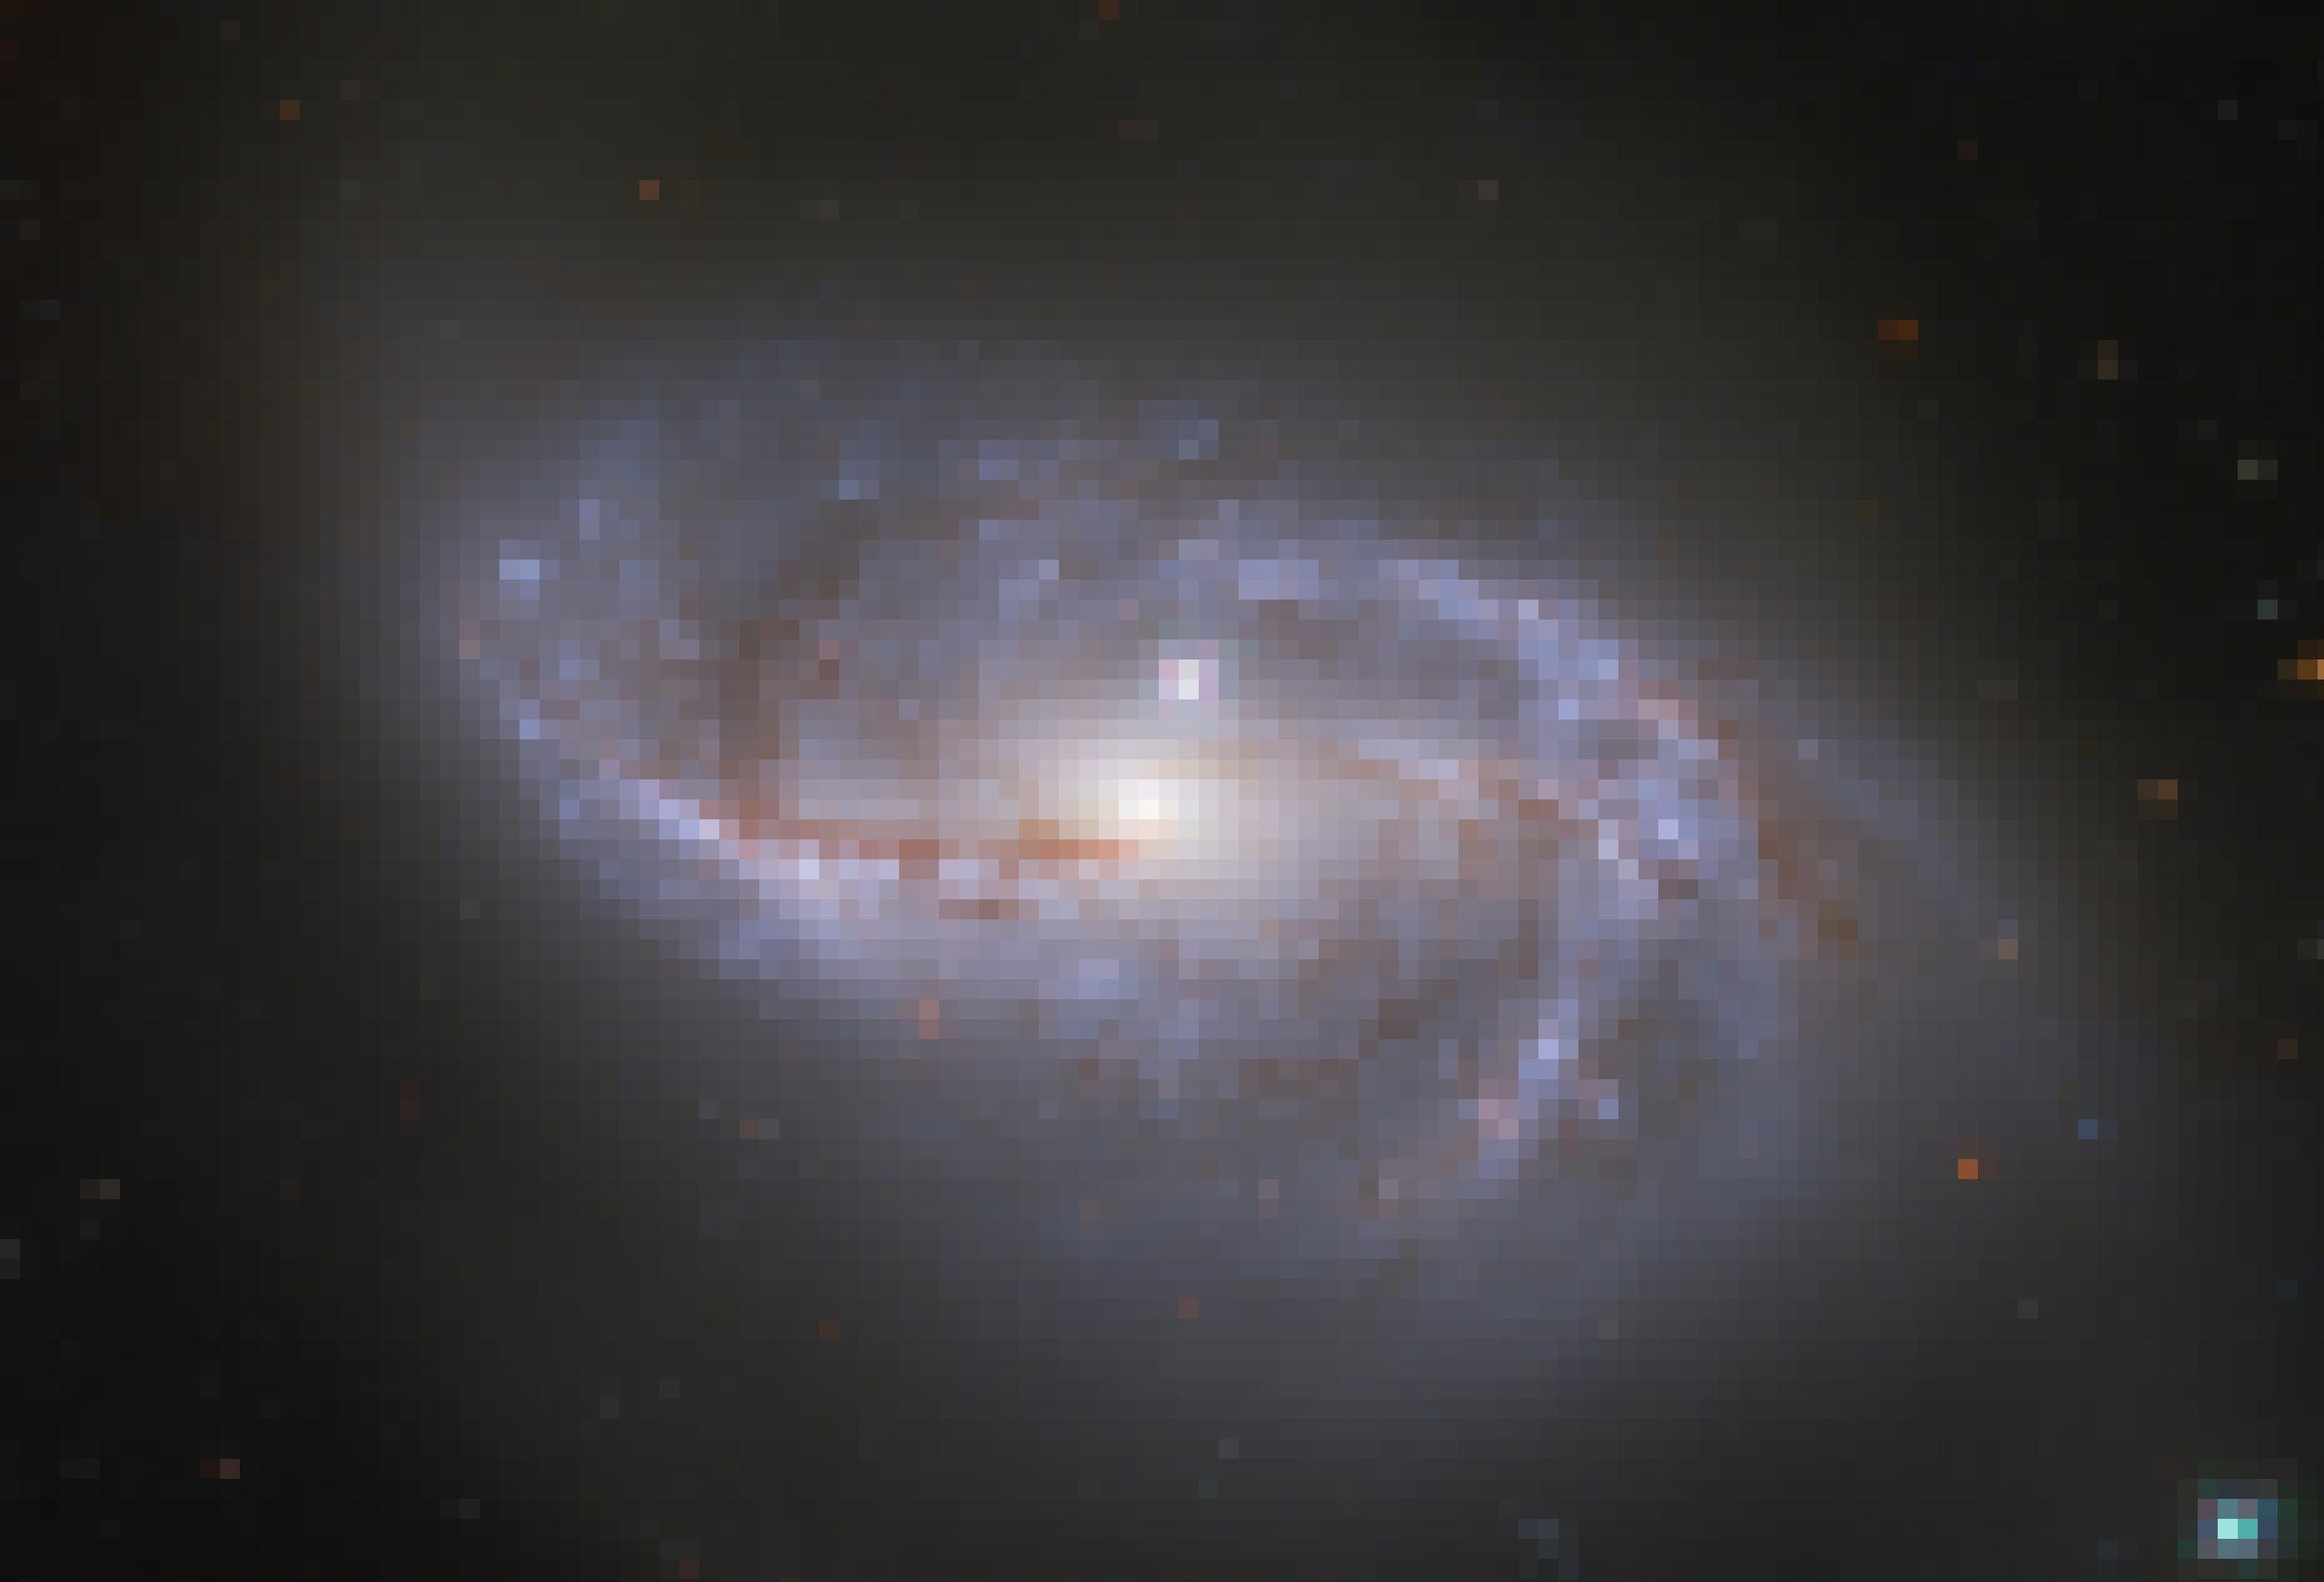 Das Bild zeigt eine von schräg oben zu sehende Galaxie mit schön ausgeprägten Spiralarmen. In der Zentrallinie der Arme sind vor allem rötliche Bereiche aus Gas- und Staubwolken mit jungen Sternen zu erkennen, daneben liegen Bereiche mit vielen helleren weißlichen und bläulichen Sternen. Die Spiralarme gehen von einem länglichen – balkenförmigen – Zentrum aus, in dem sich viele Sterne konzentrieren und das viel heller leuchtet als die Arme. Die Galaxie ist als NGC 2608 bekannt und wurde Hubble-Weltraumteleskop aufgenommen.